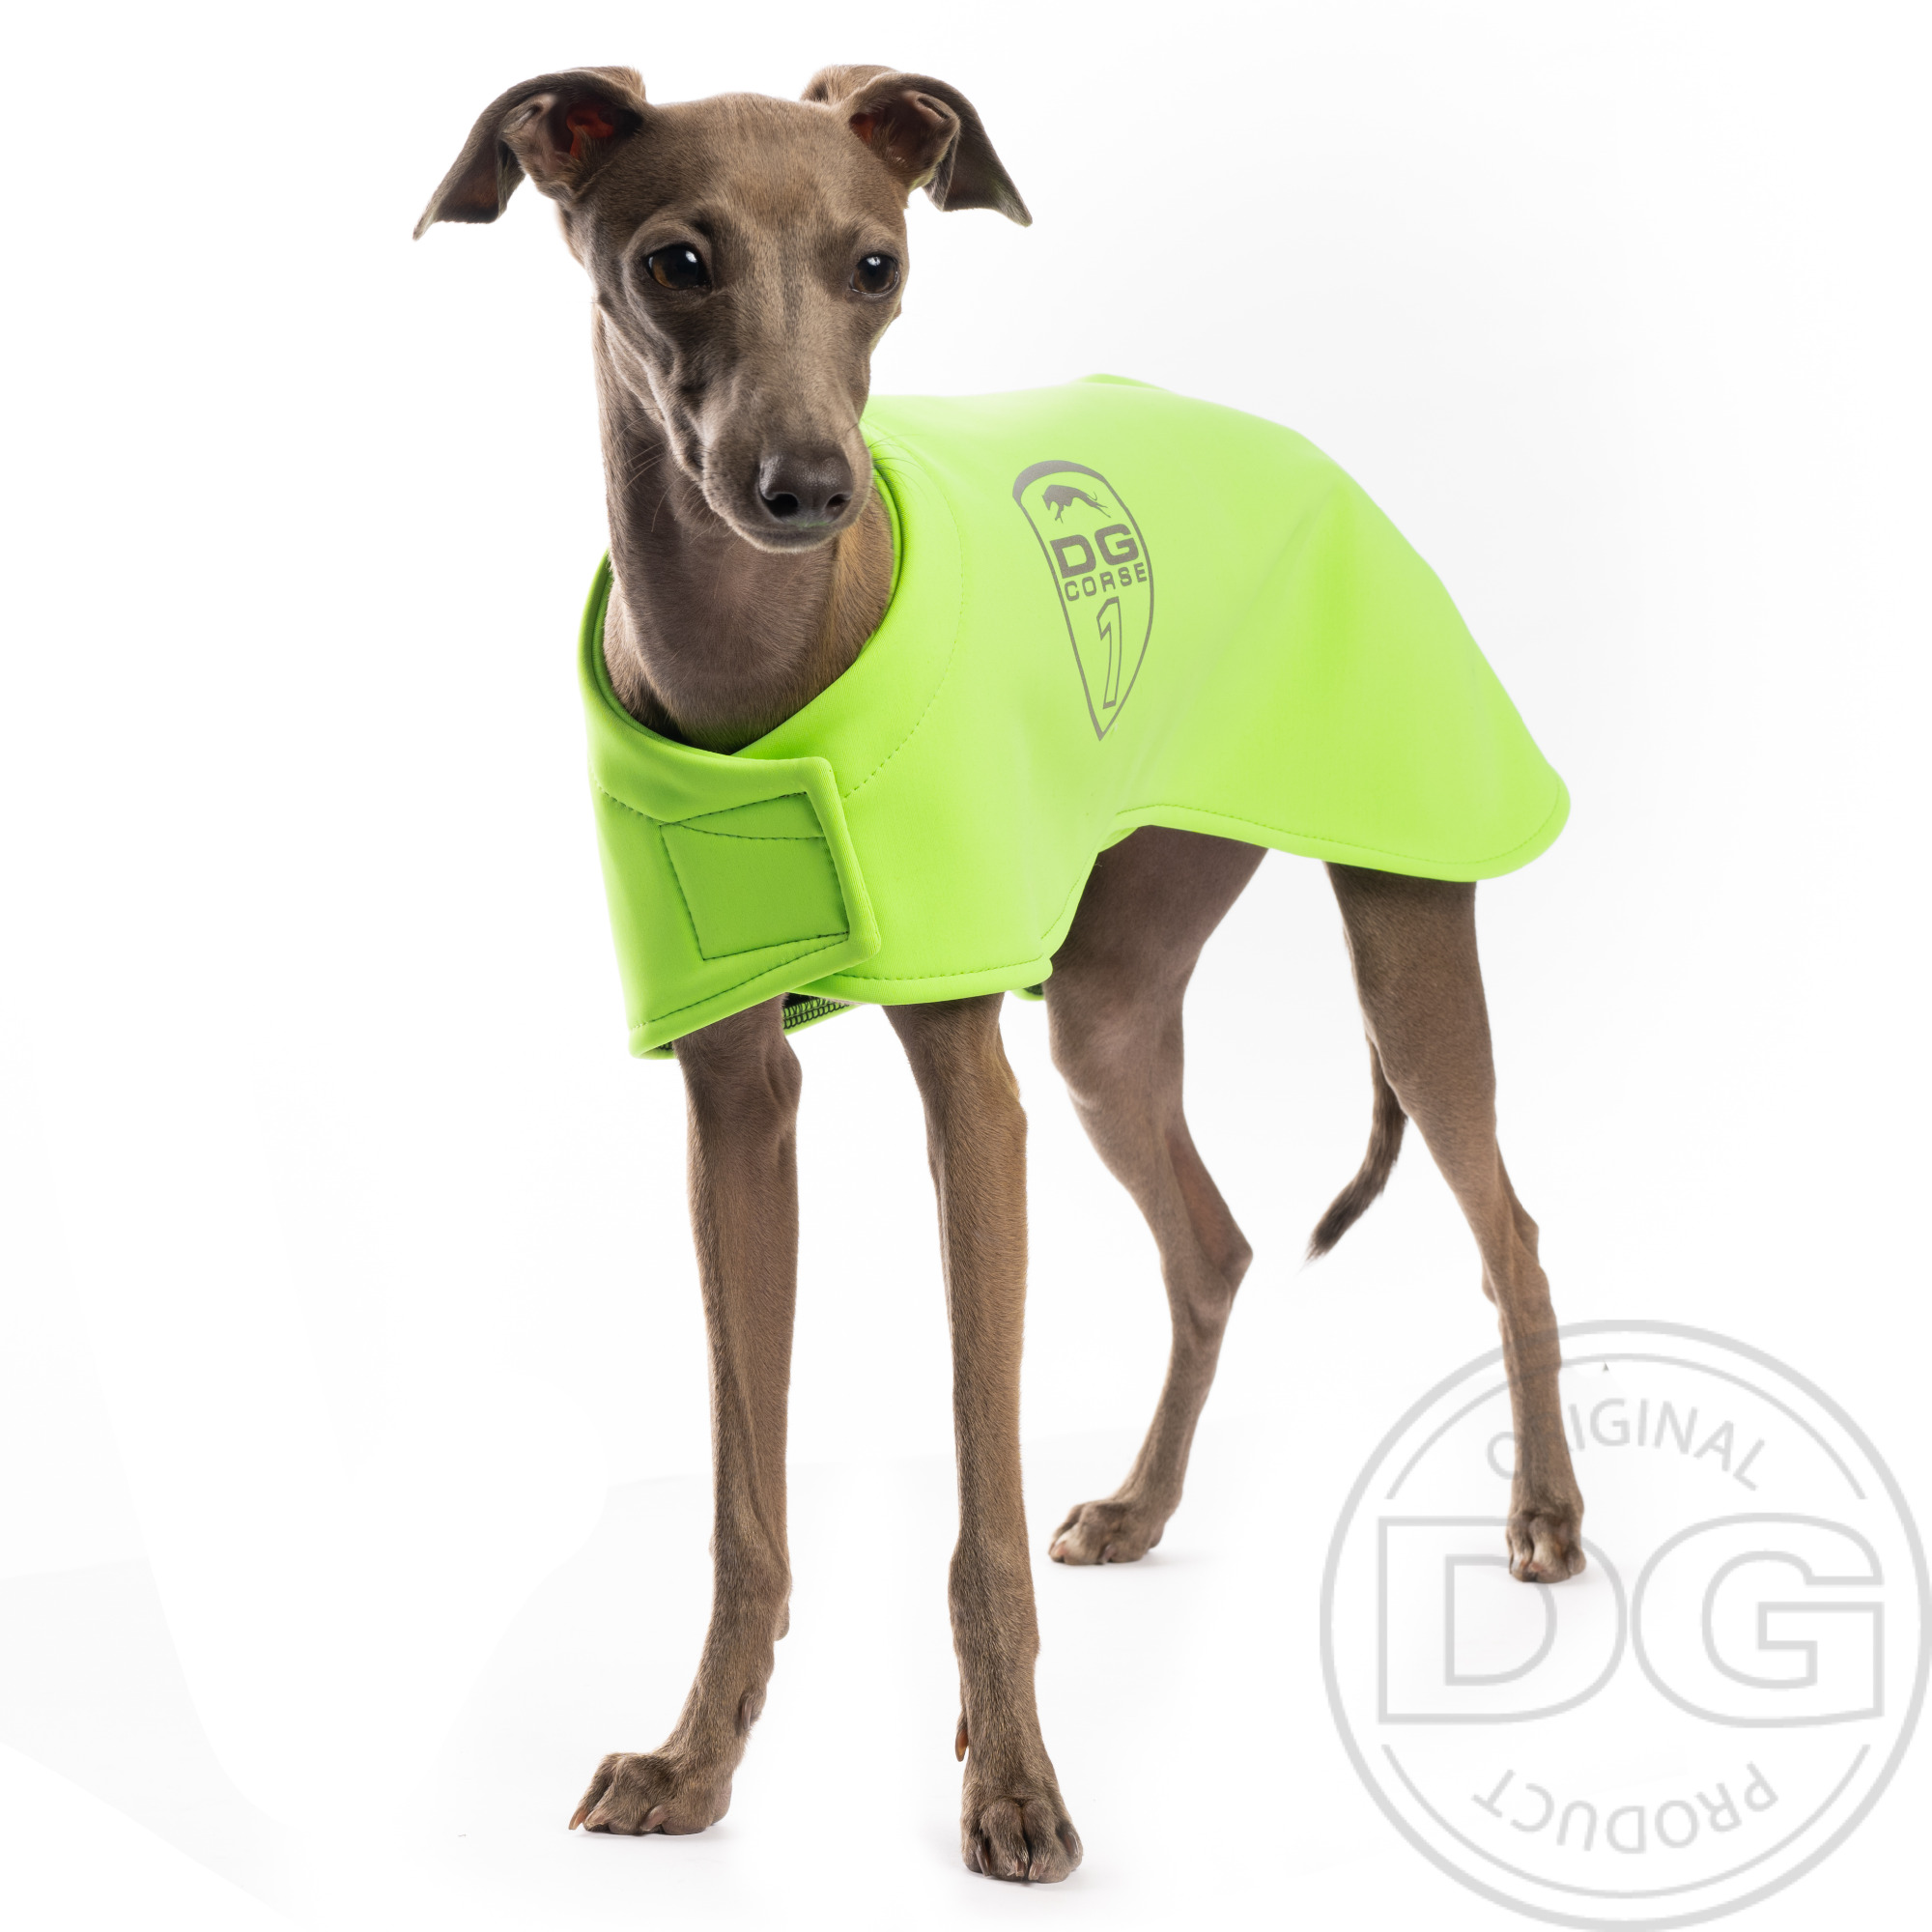 Italian greyhound clothing - DG BASIC BLANKET BLACK jacket - DG image 1